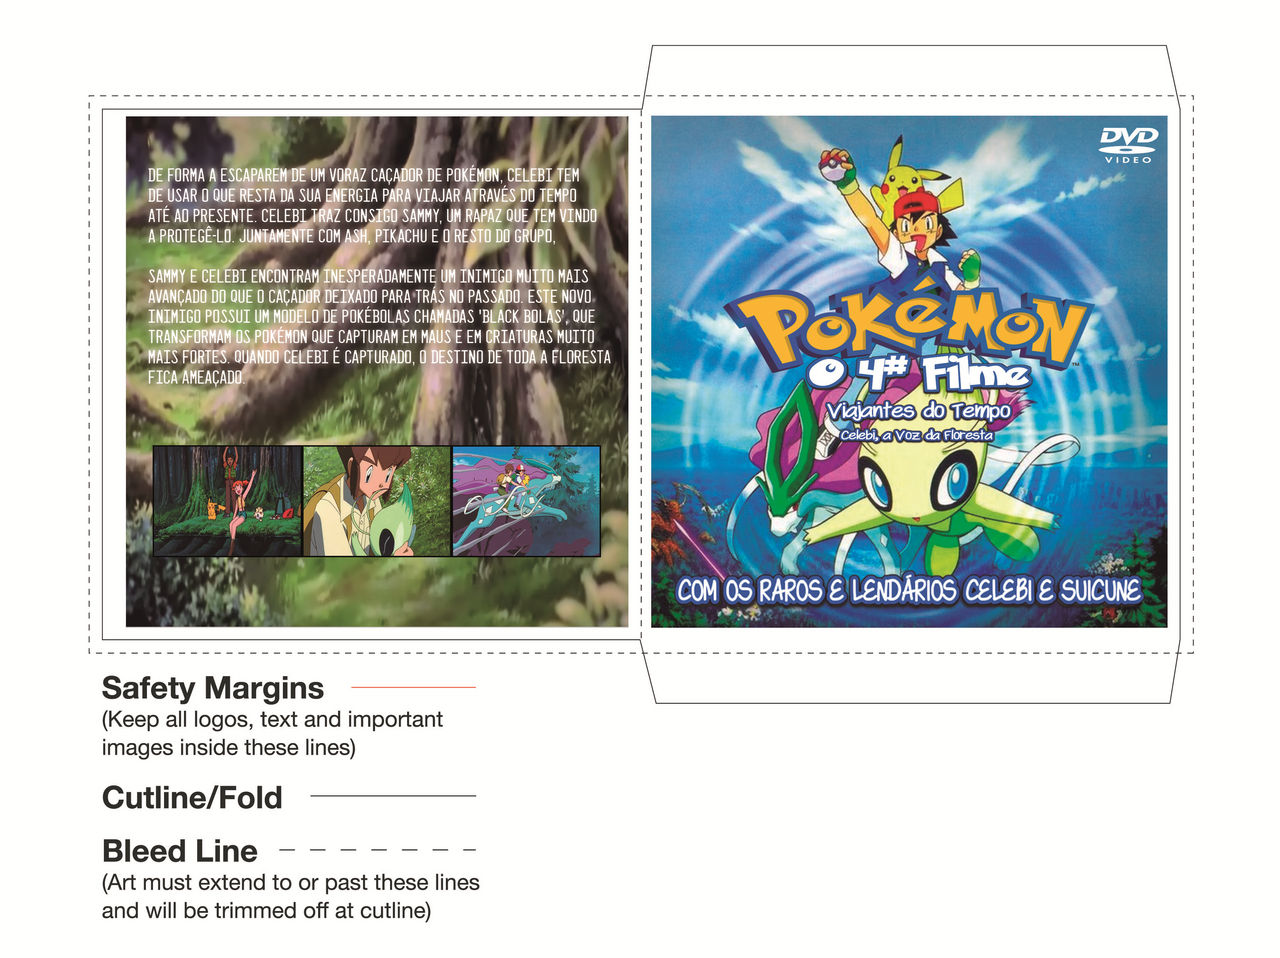 Venda De Pokemons Lendarios (Leia A Descrição) - Pokemon Go - DFG